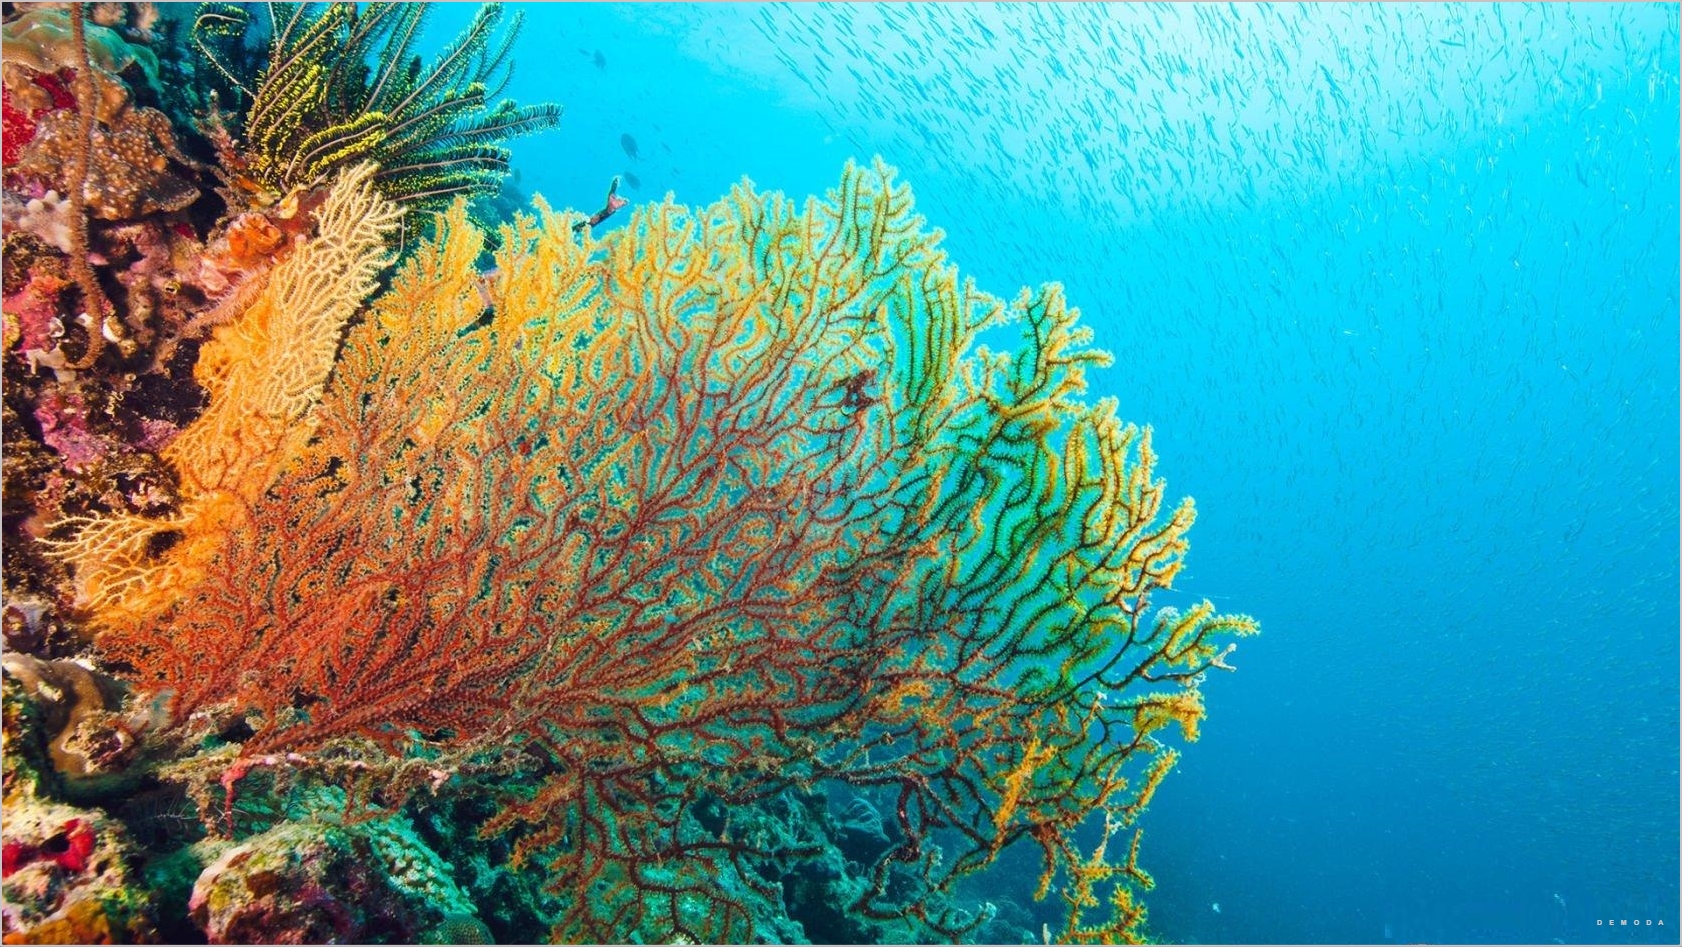 Ghé thăm hình nền san hô biển tuyệt đẹp, đắm mình trong không gian đầy màu sắc của đại dương. Cảm nhận sự thanh bình và tĩnh lặng mà chỉ người yêu thiên nhiên mới có được.